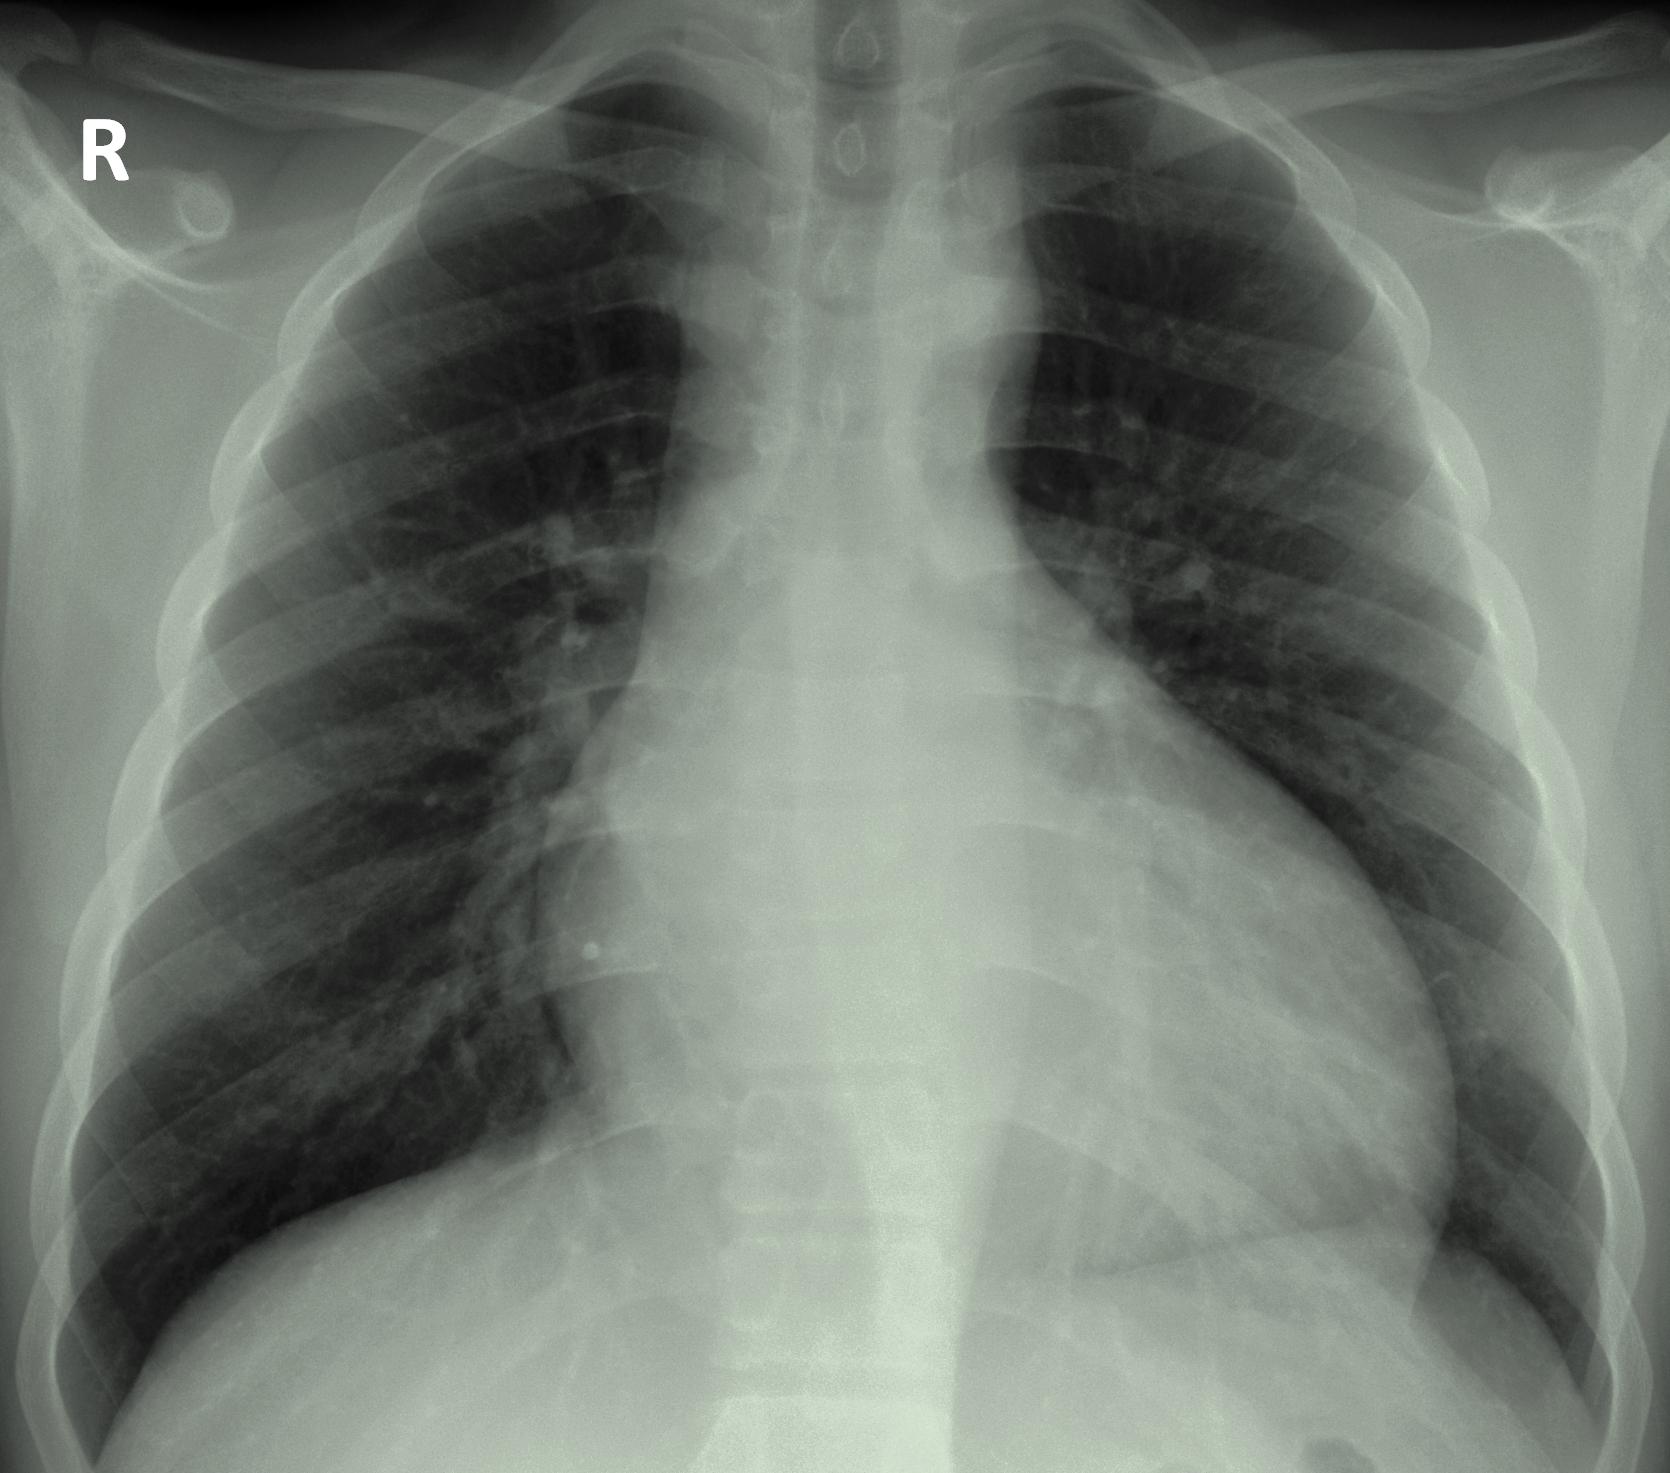 File:Aortic regurgitation x-ray.jpg